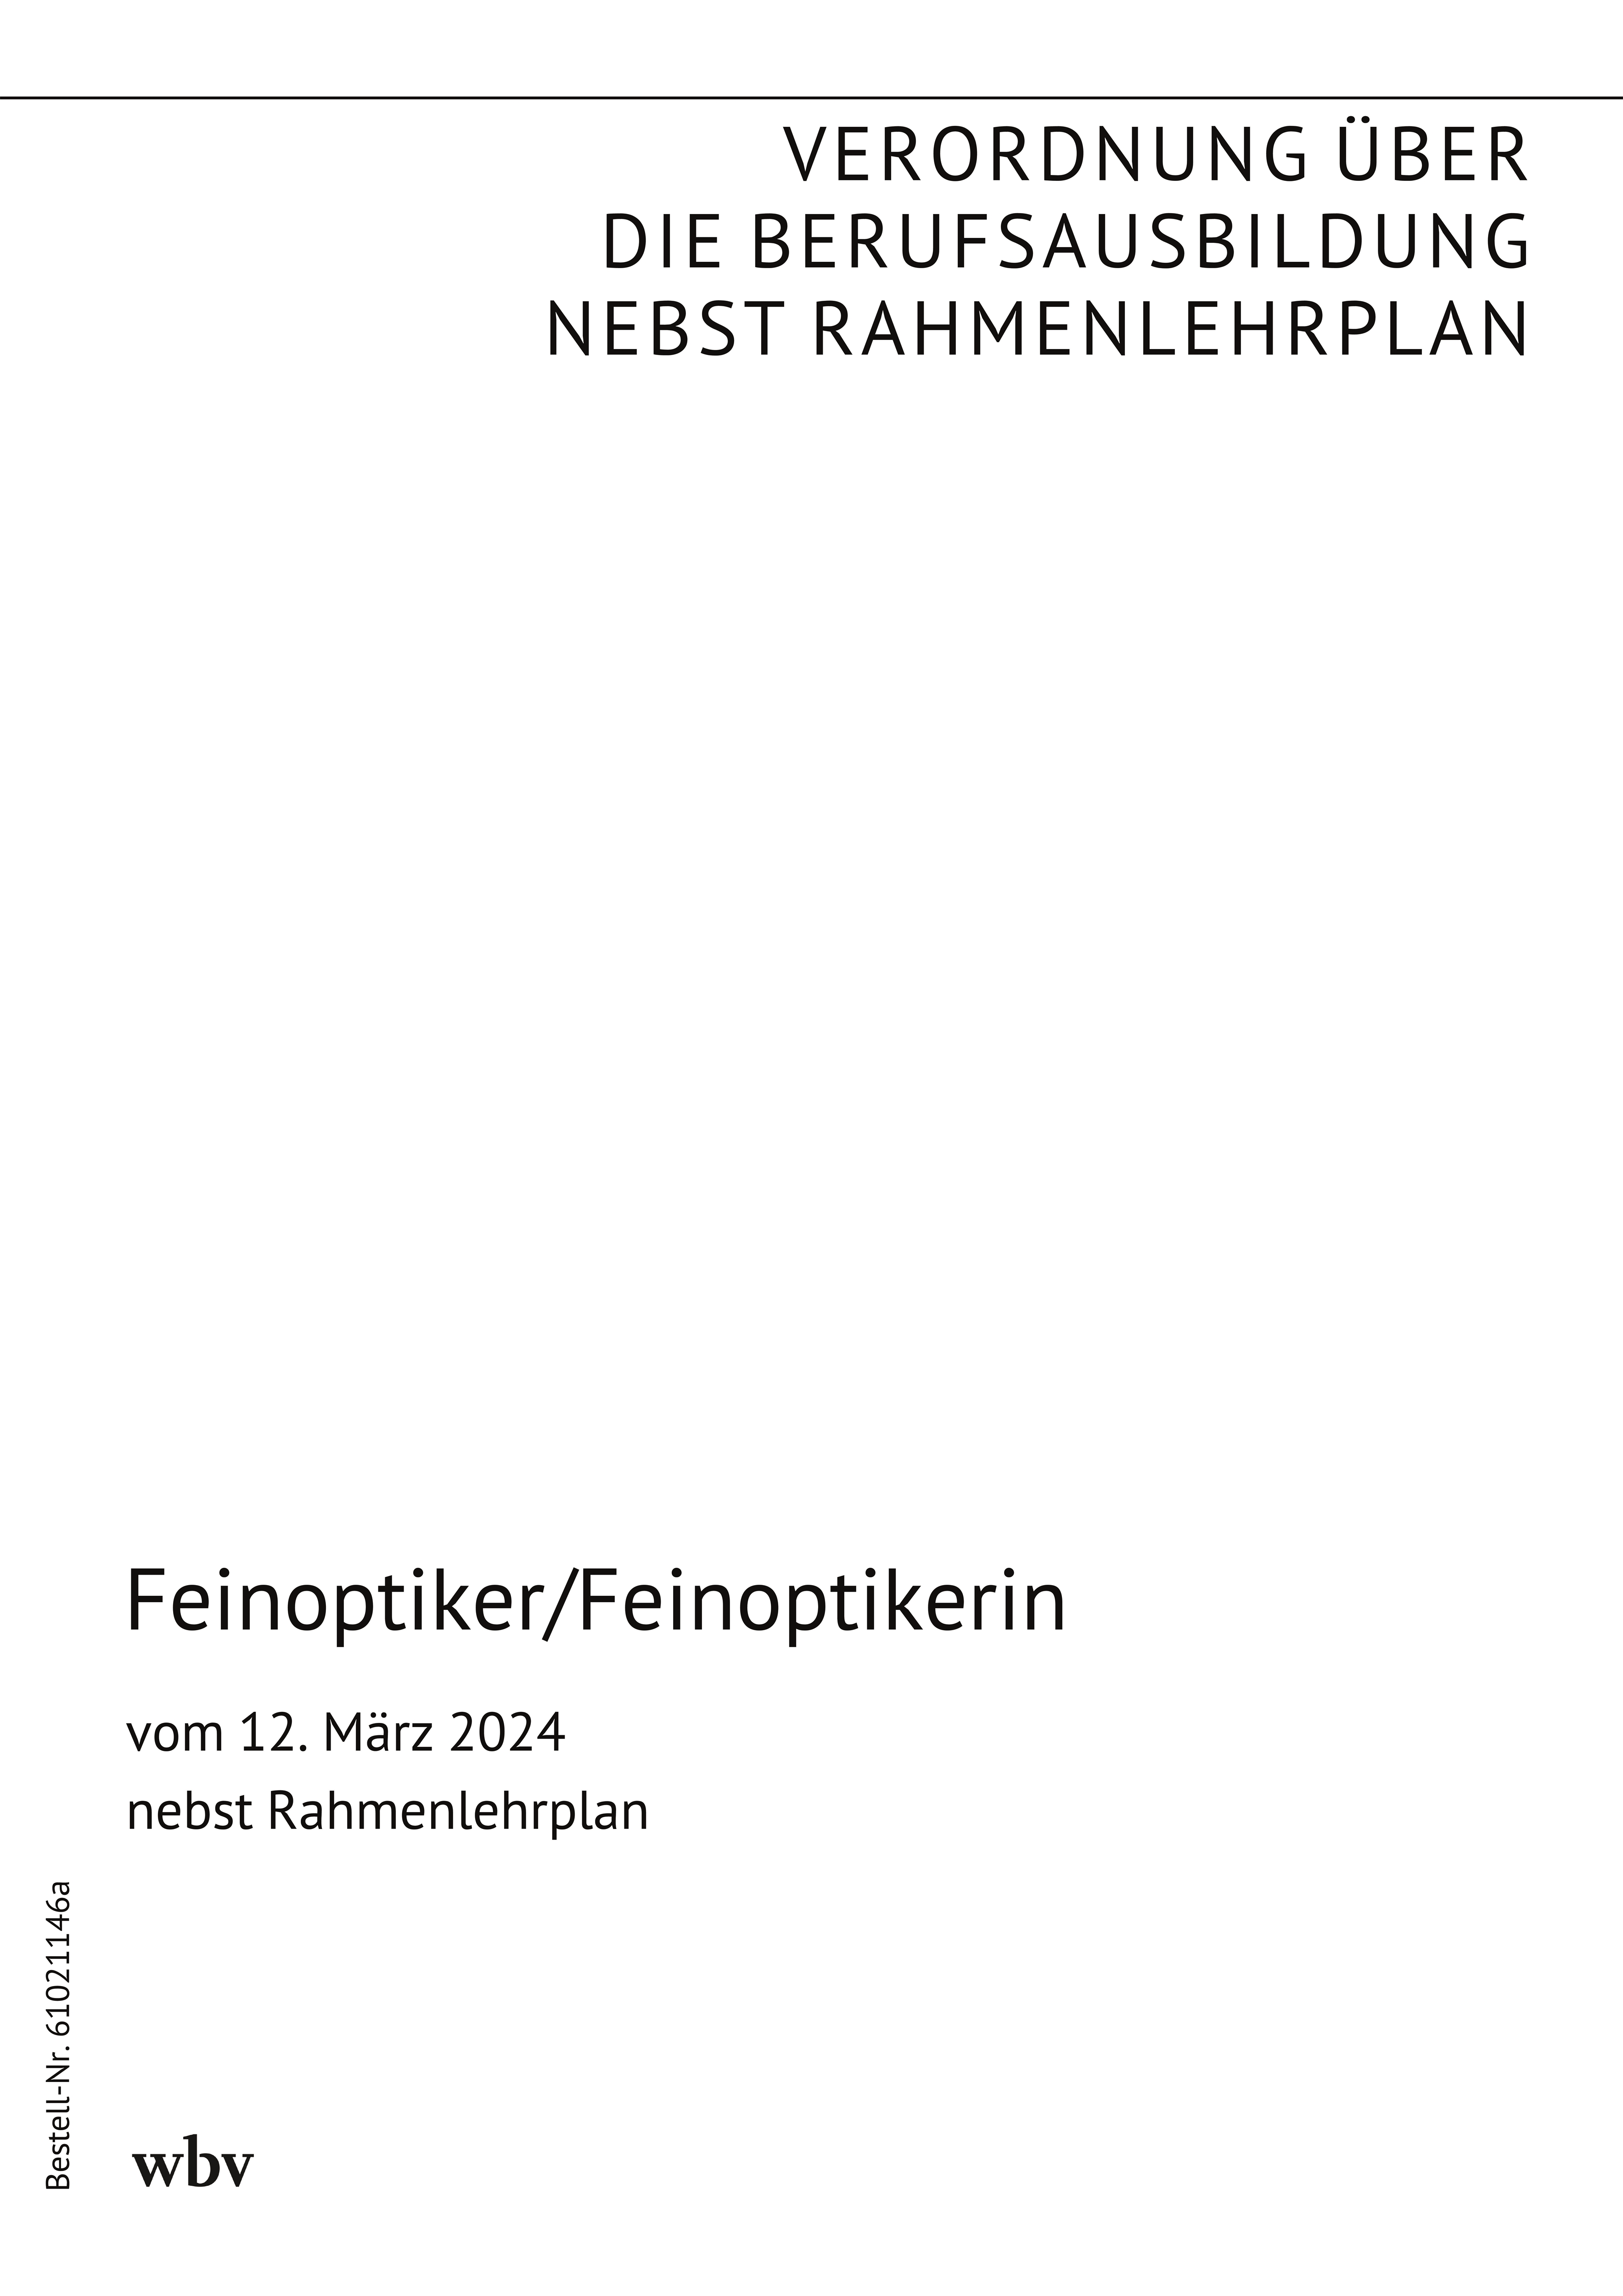 Feinoptiker/Feinoptikerin